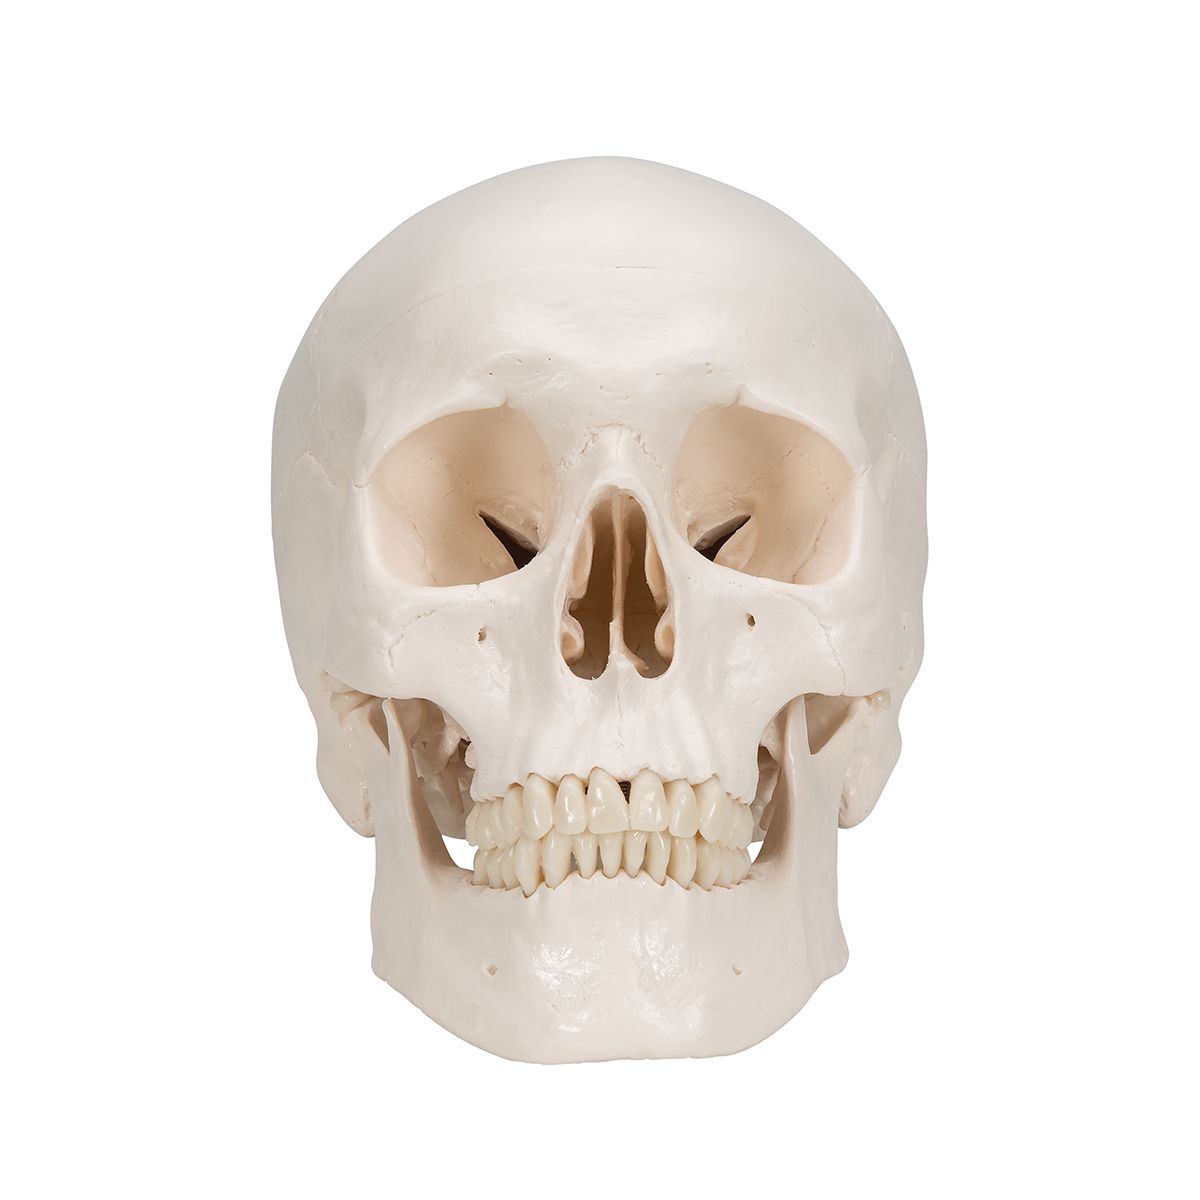 Crâne classique A20 à 89,50 € dans Crâne anatomique